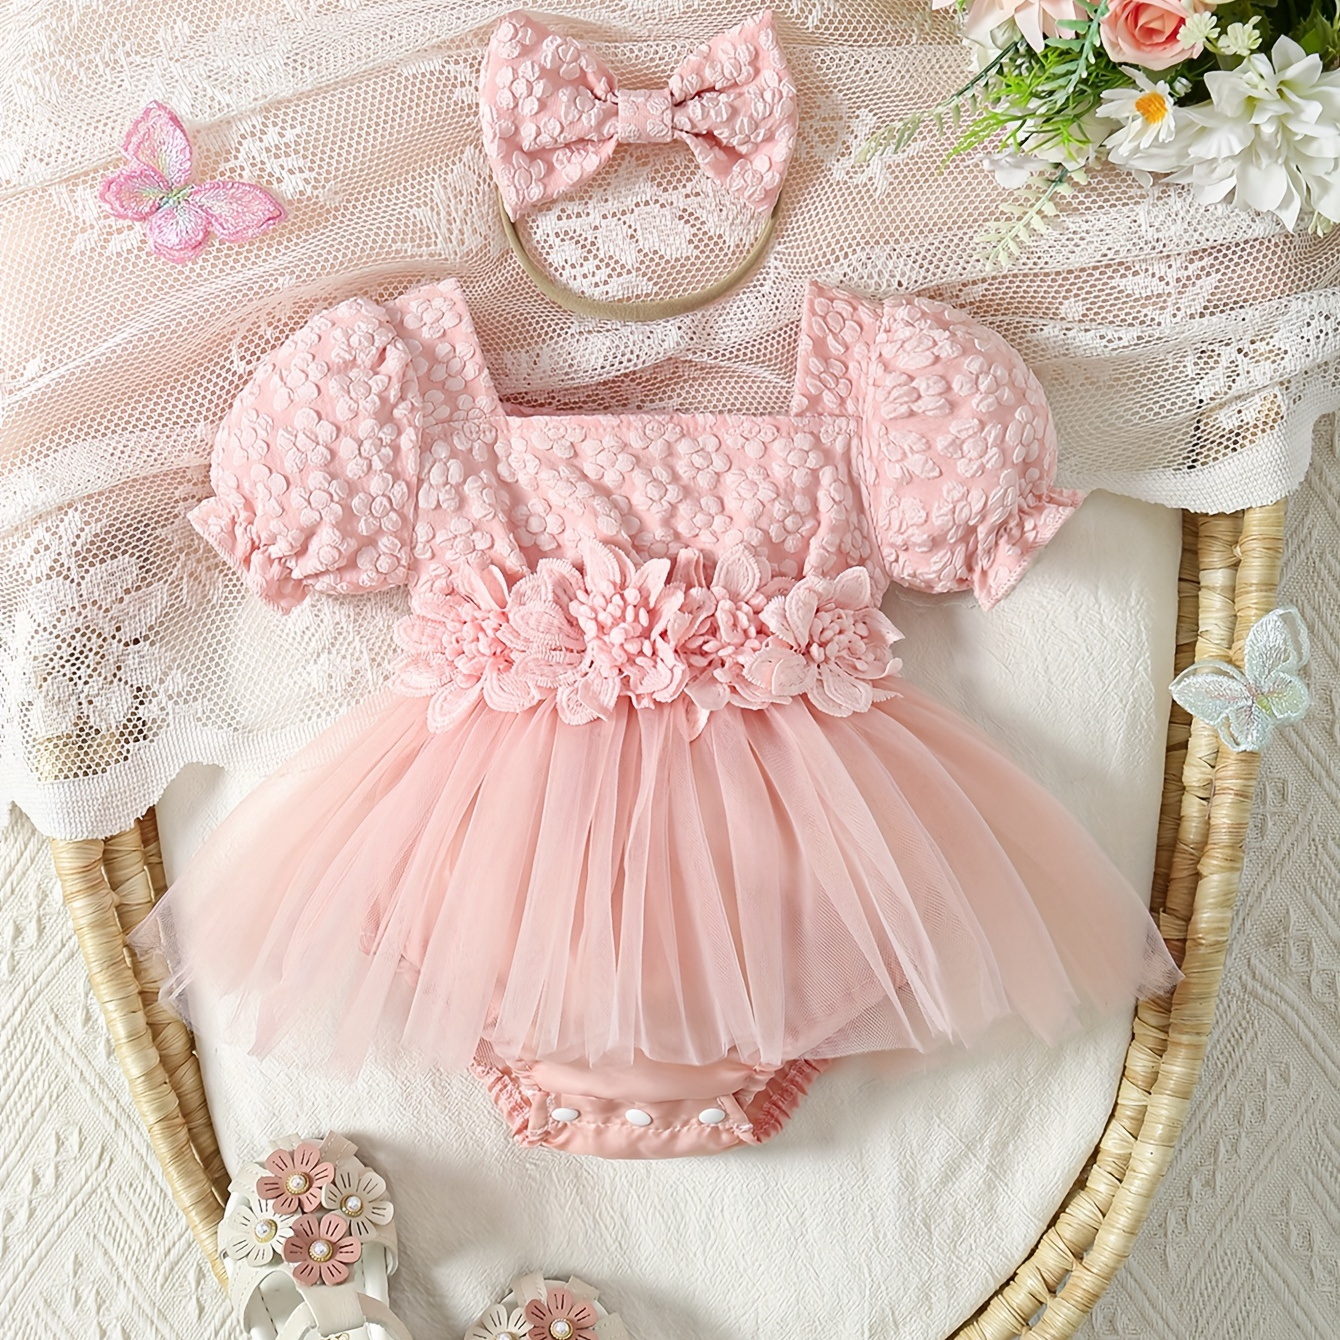 

Baby's Elegant Flower Jacquard Princess Triangle Bodysuit, Flower Decor Mesh Splicing Puff Sleeve Romper Dress, Toddler & Infant Girl's Onesie For Summer, As Gift